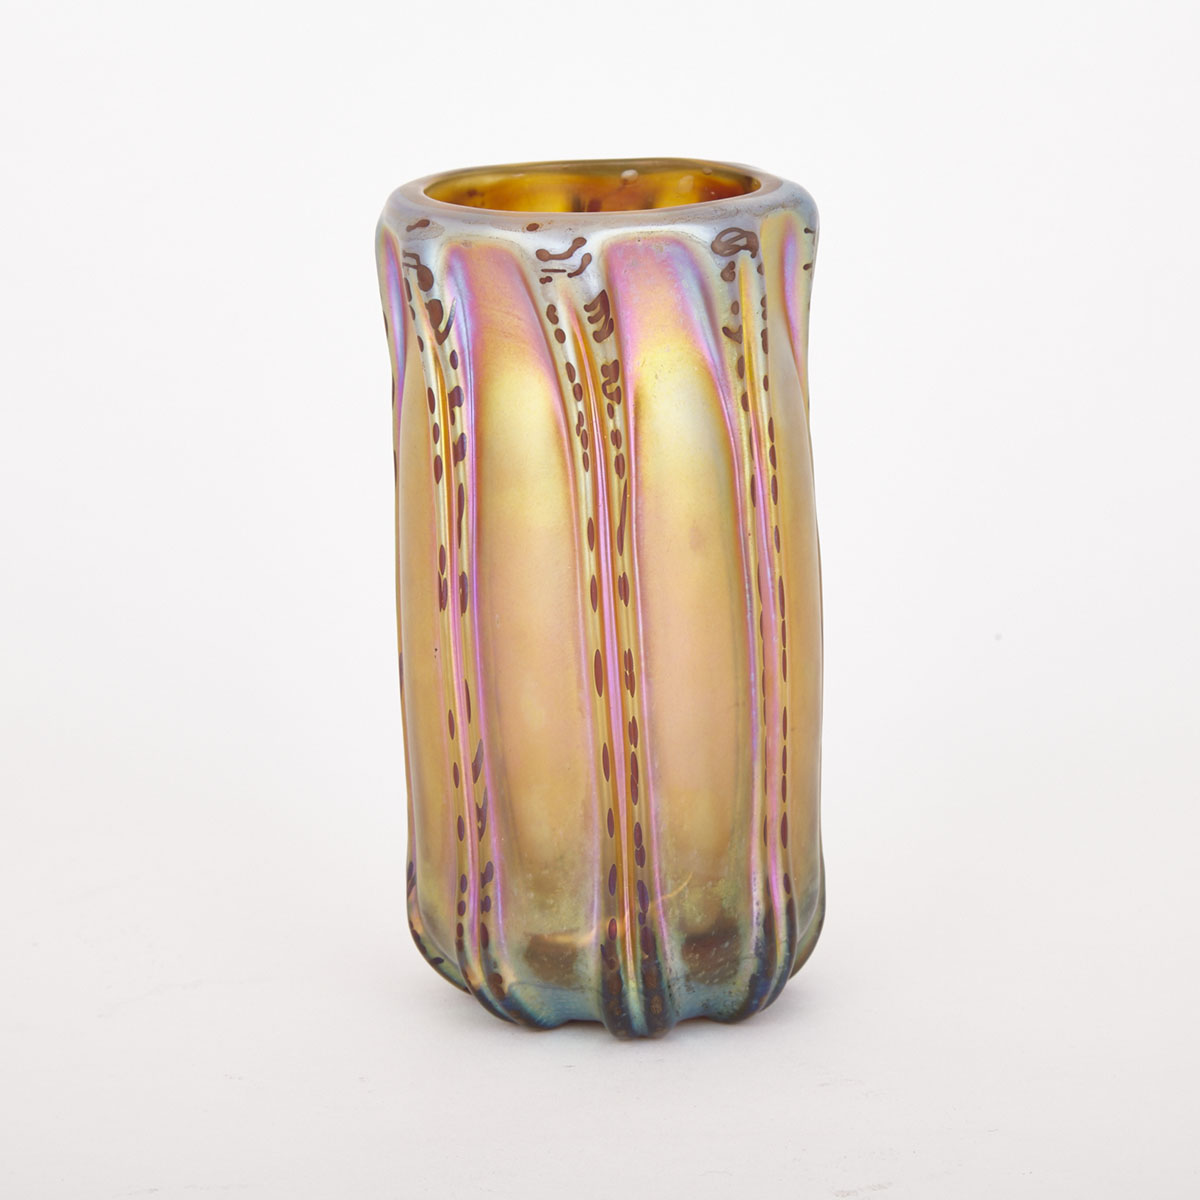 Austrian Iridescent Glass Vase, c.1900